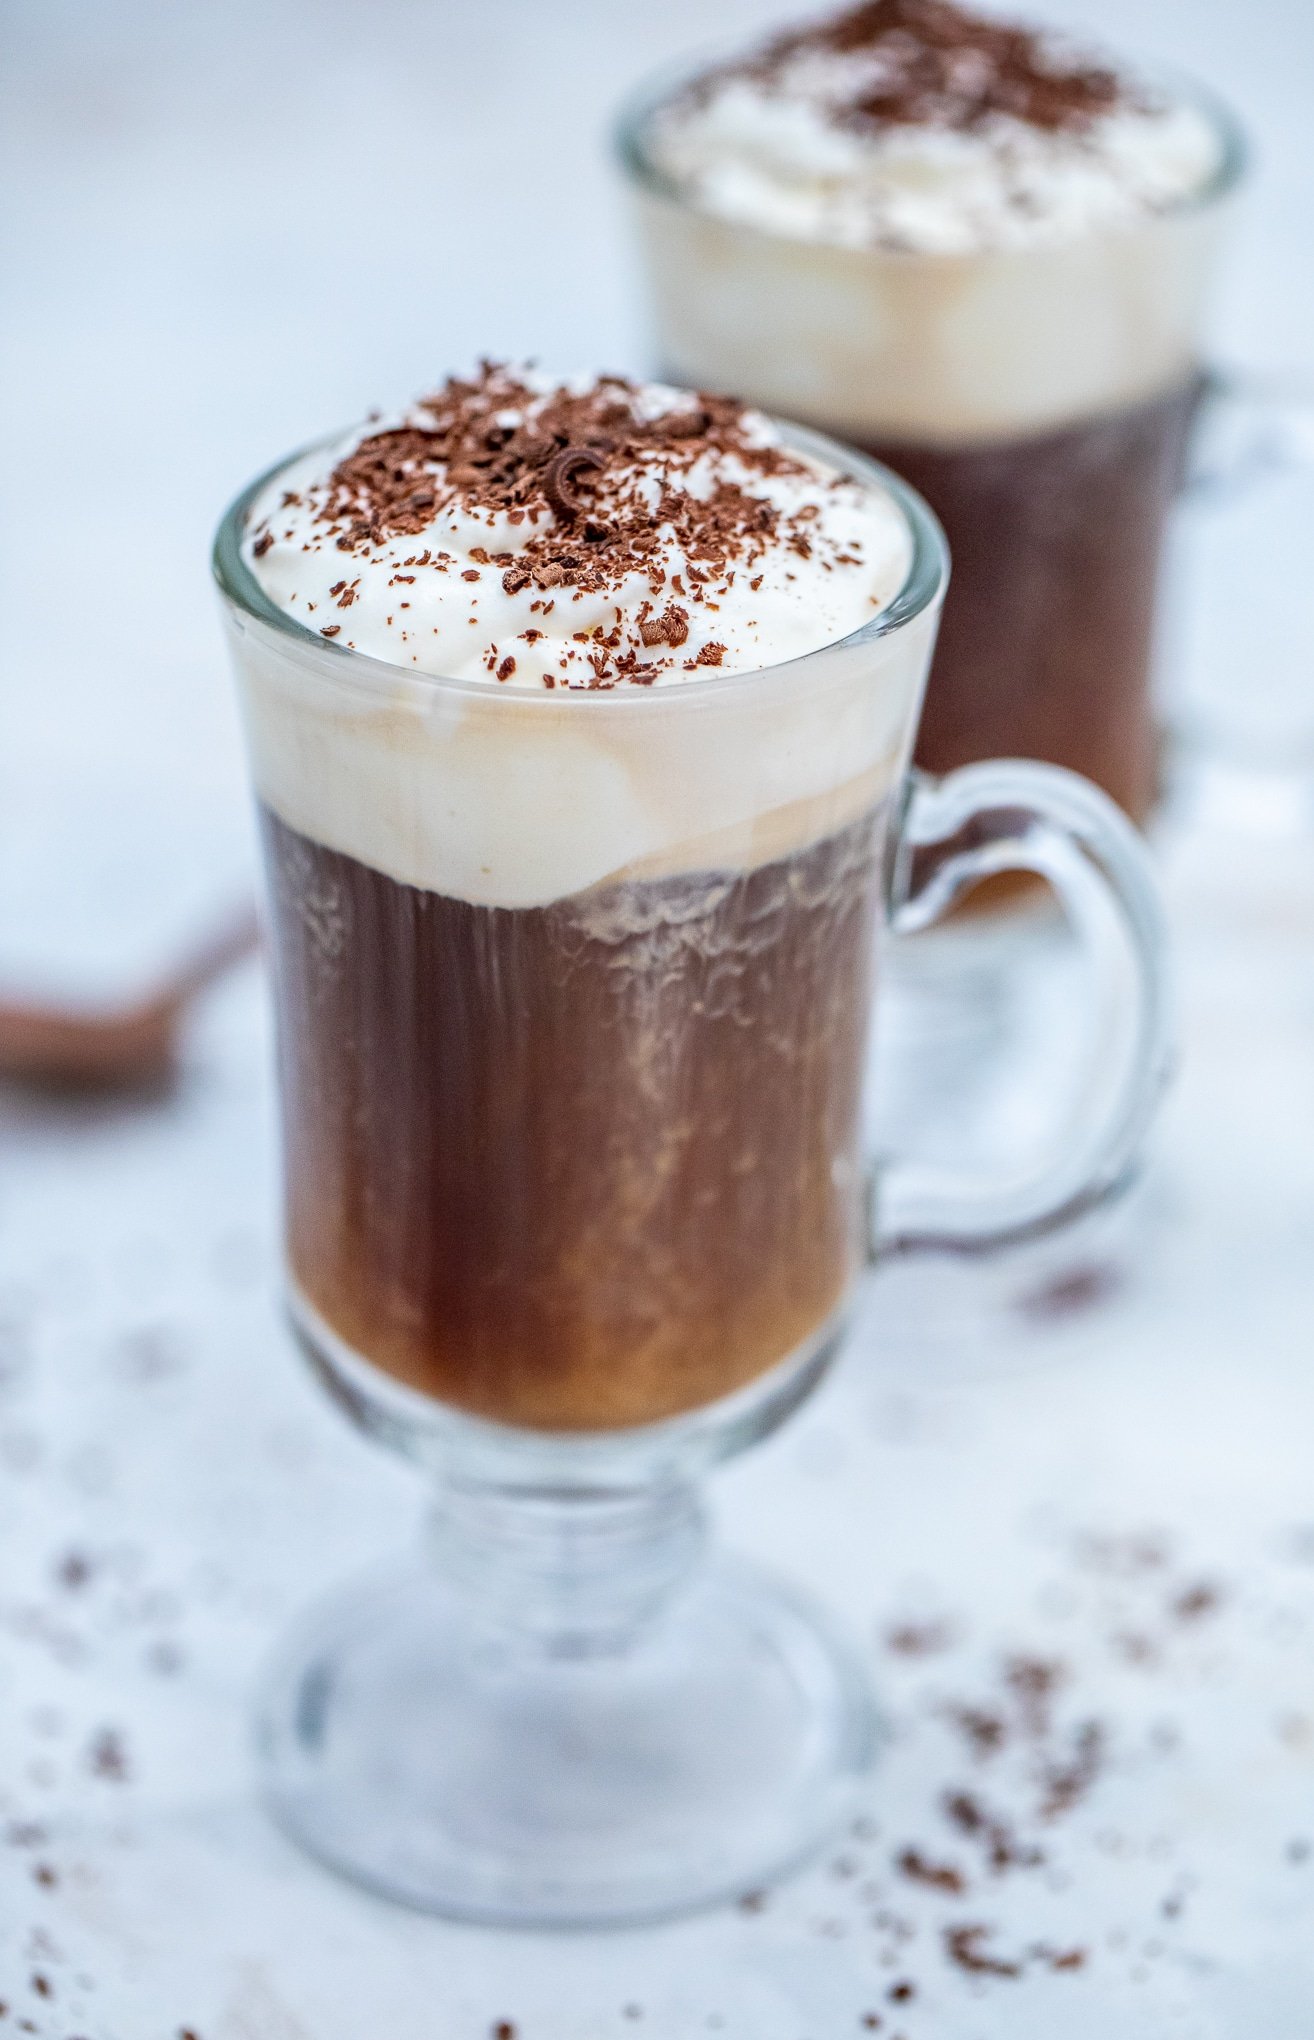 https://sweetandsavorymeals.com/wp-content/uploads/2019/12/Irish-Coffee-Recipe-2.jpg